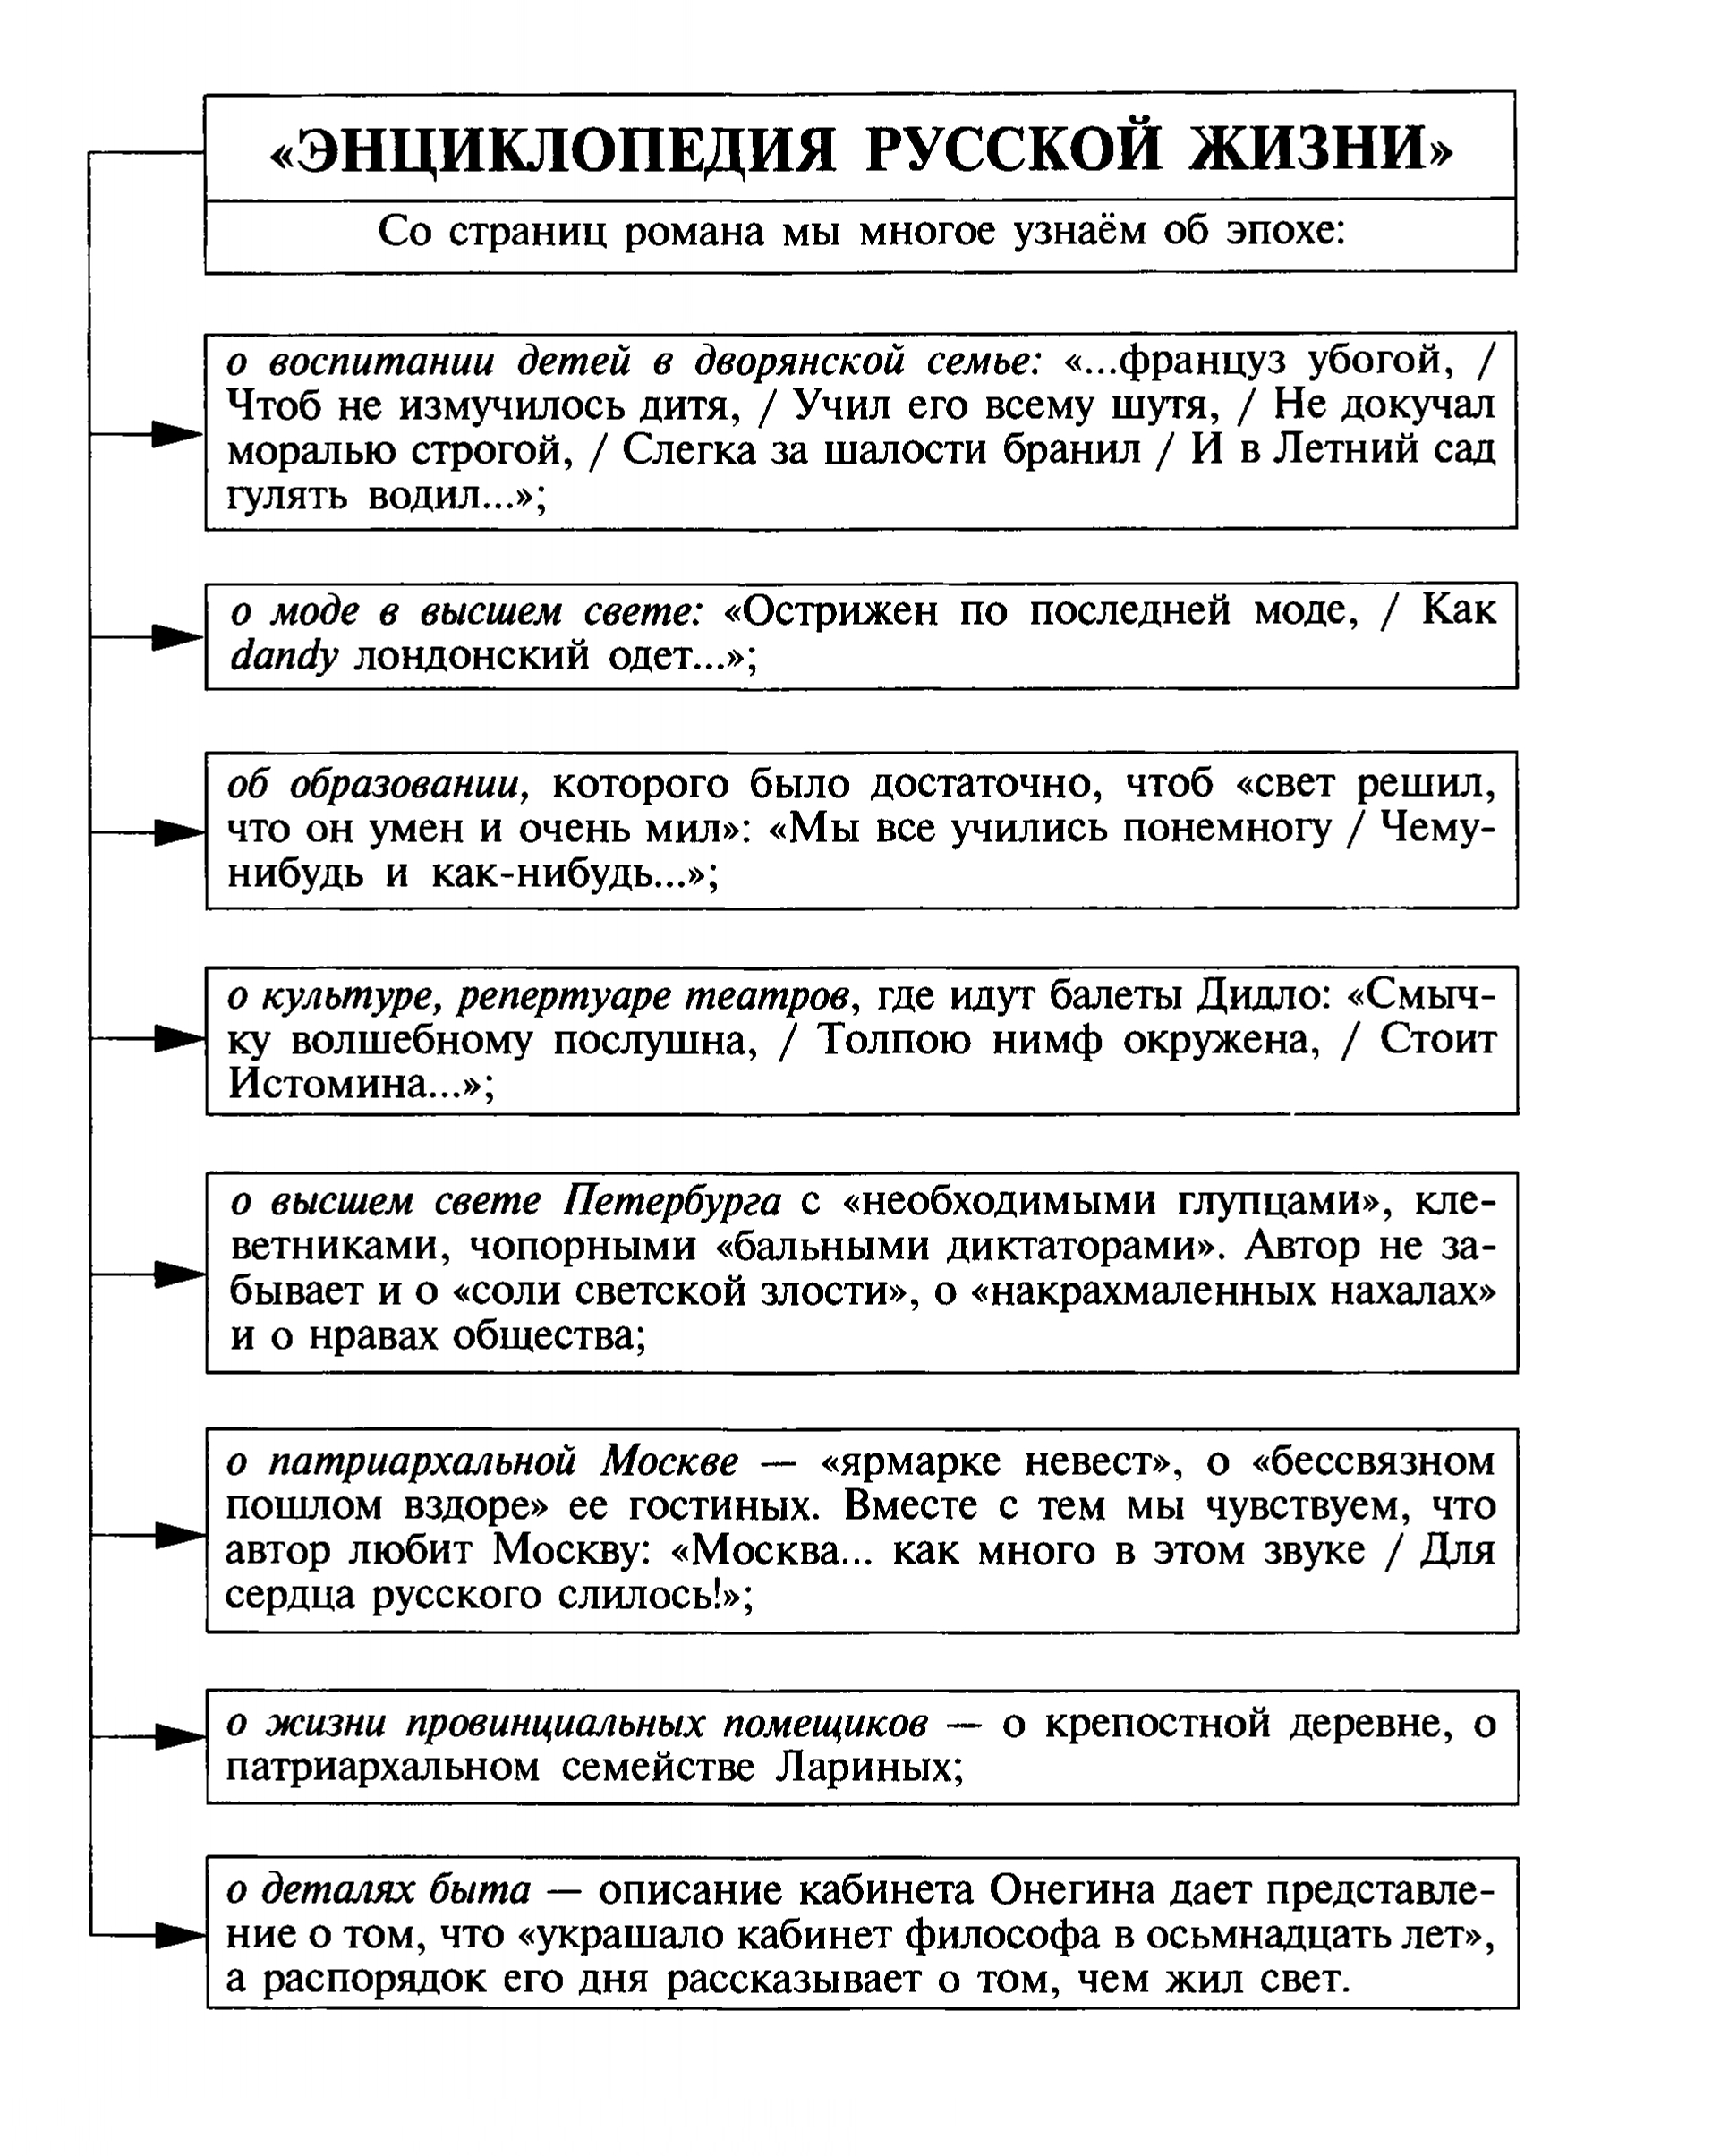 «Энциклопедия русской жизни» (таблица)